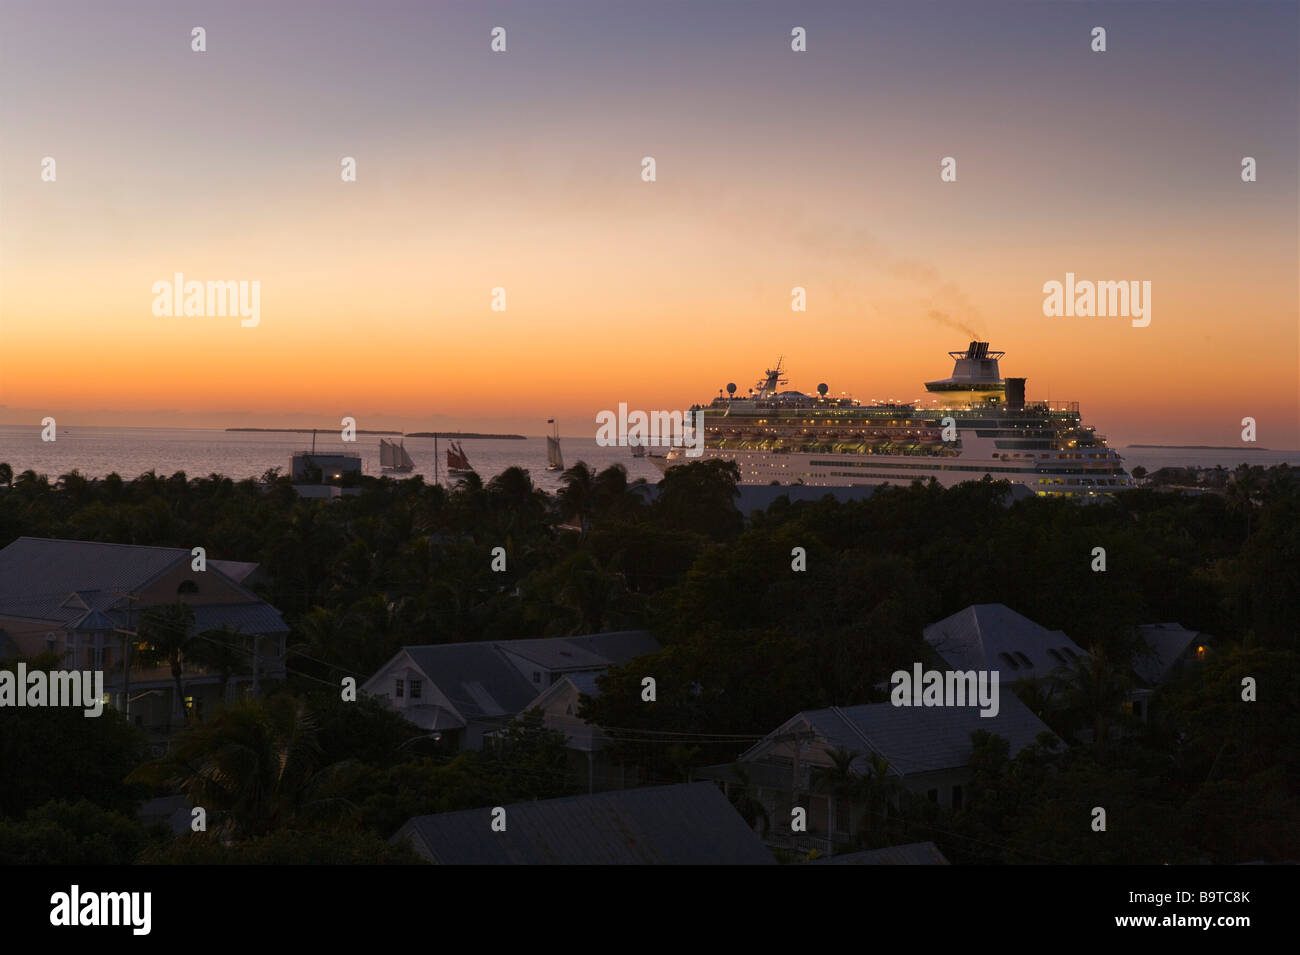 Cruise ship sailing from Key West cruise terminal at sunset, Key West, Florida Keys, USA Stock Photo